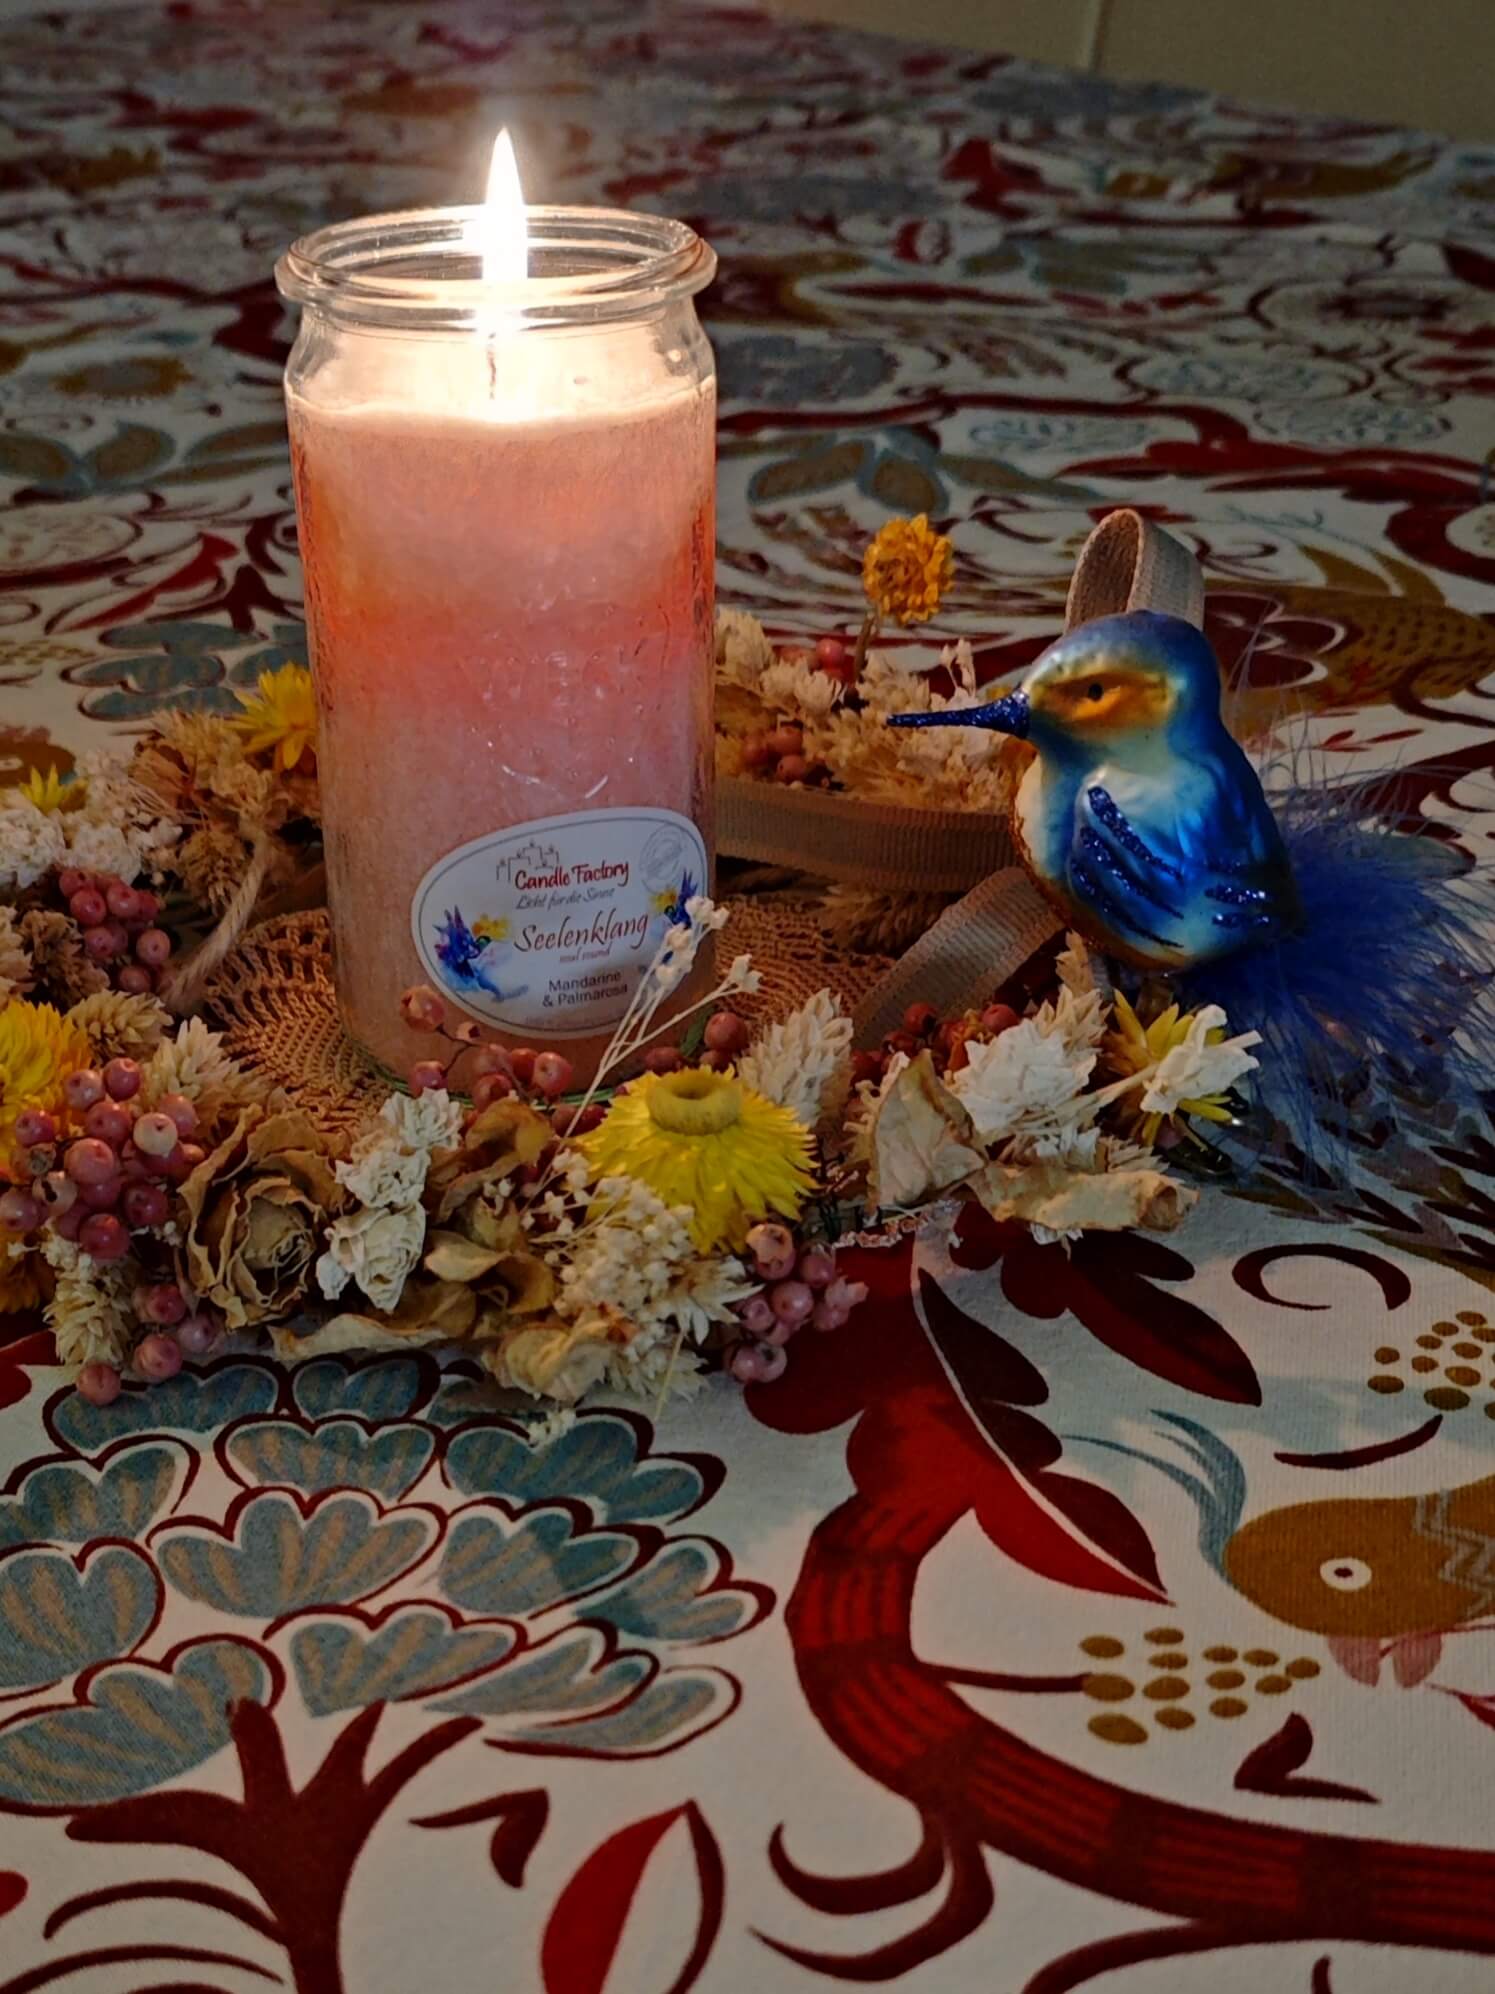 Brennende Kerze in einem Blumekranz mit Eisvogel-Figur auf einer bunten Tischdecke mit floralem Muster